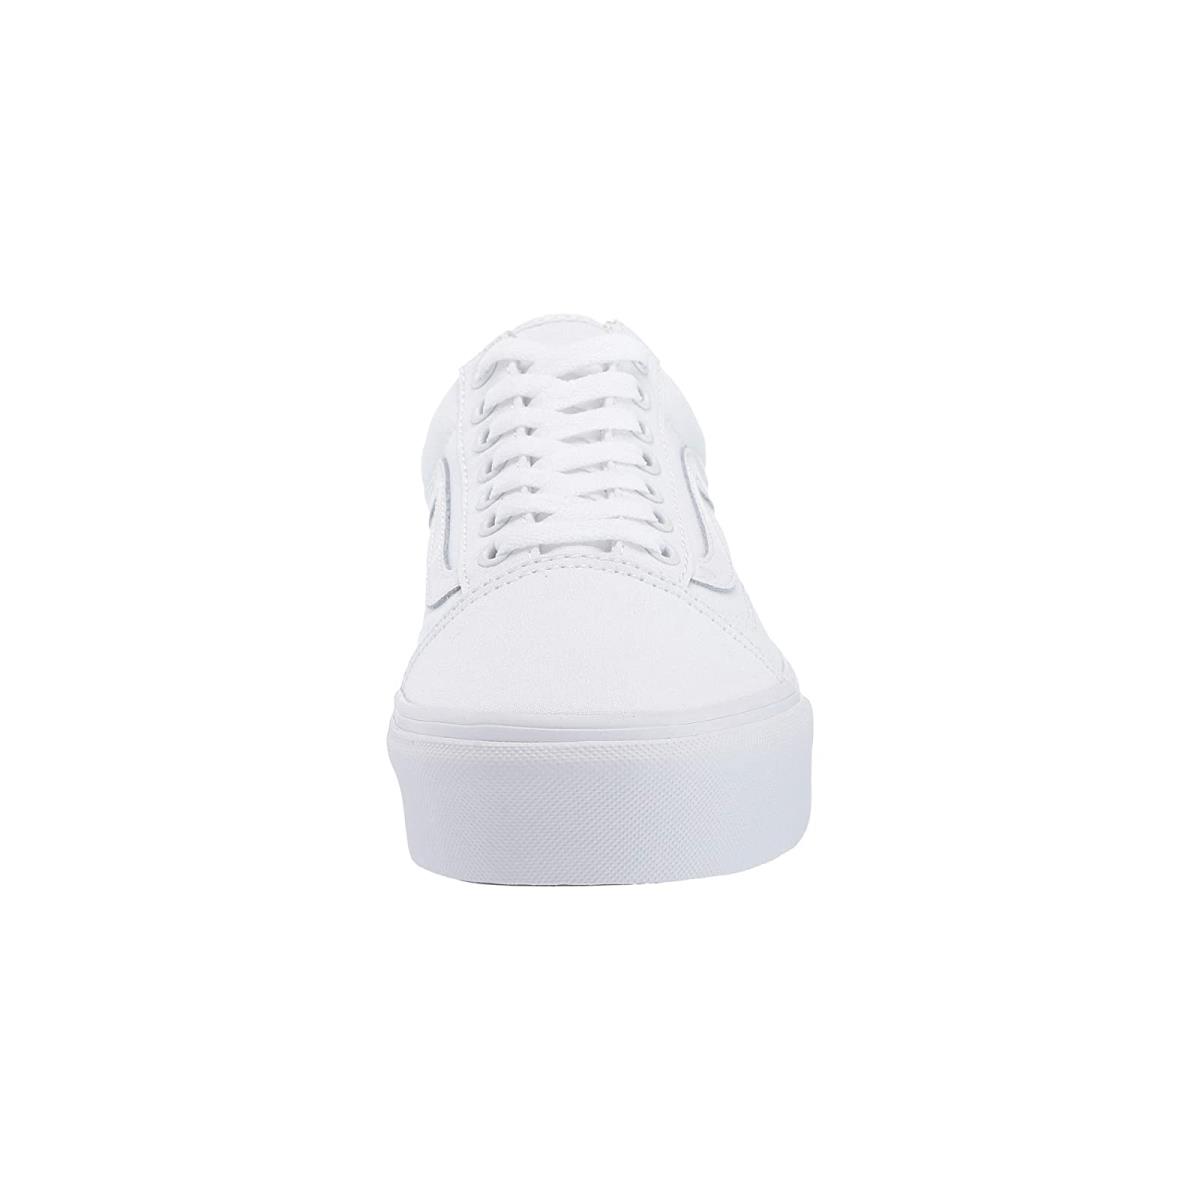 Unisex Sneakers Athletic Shoes Vans Old Skool Platform True White